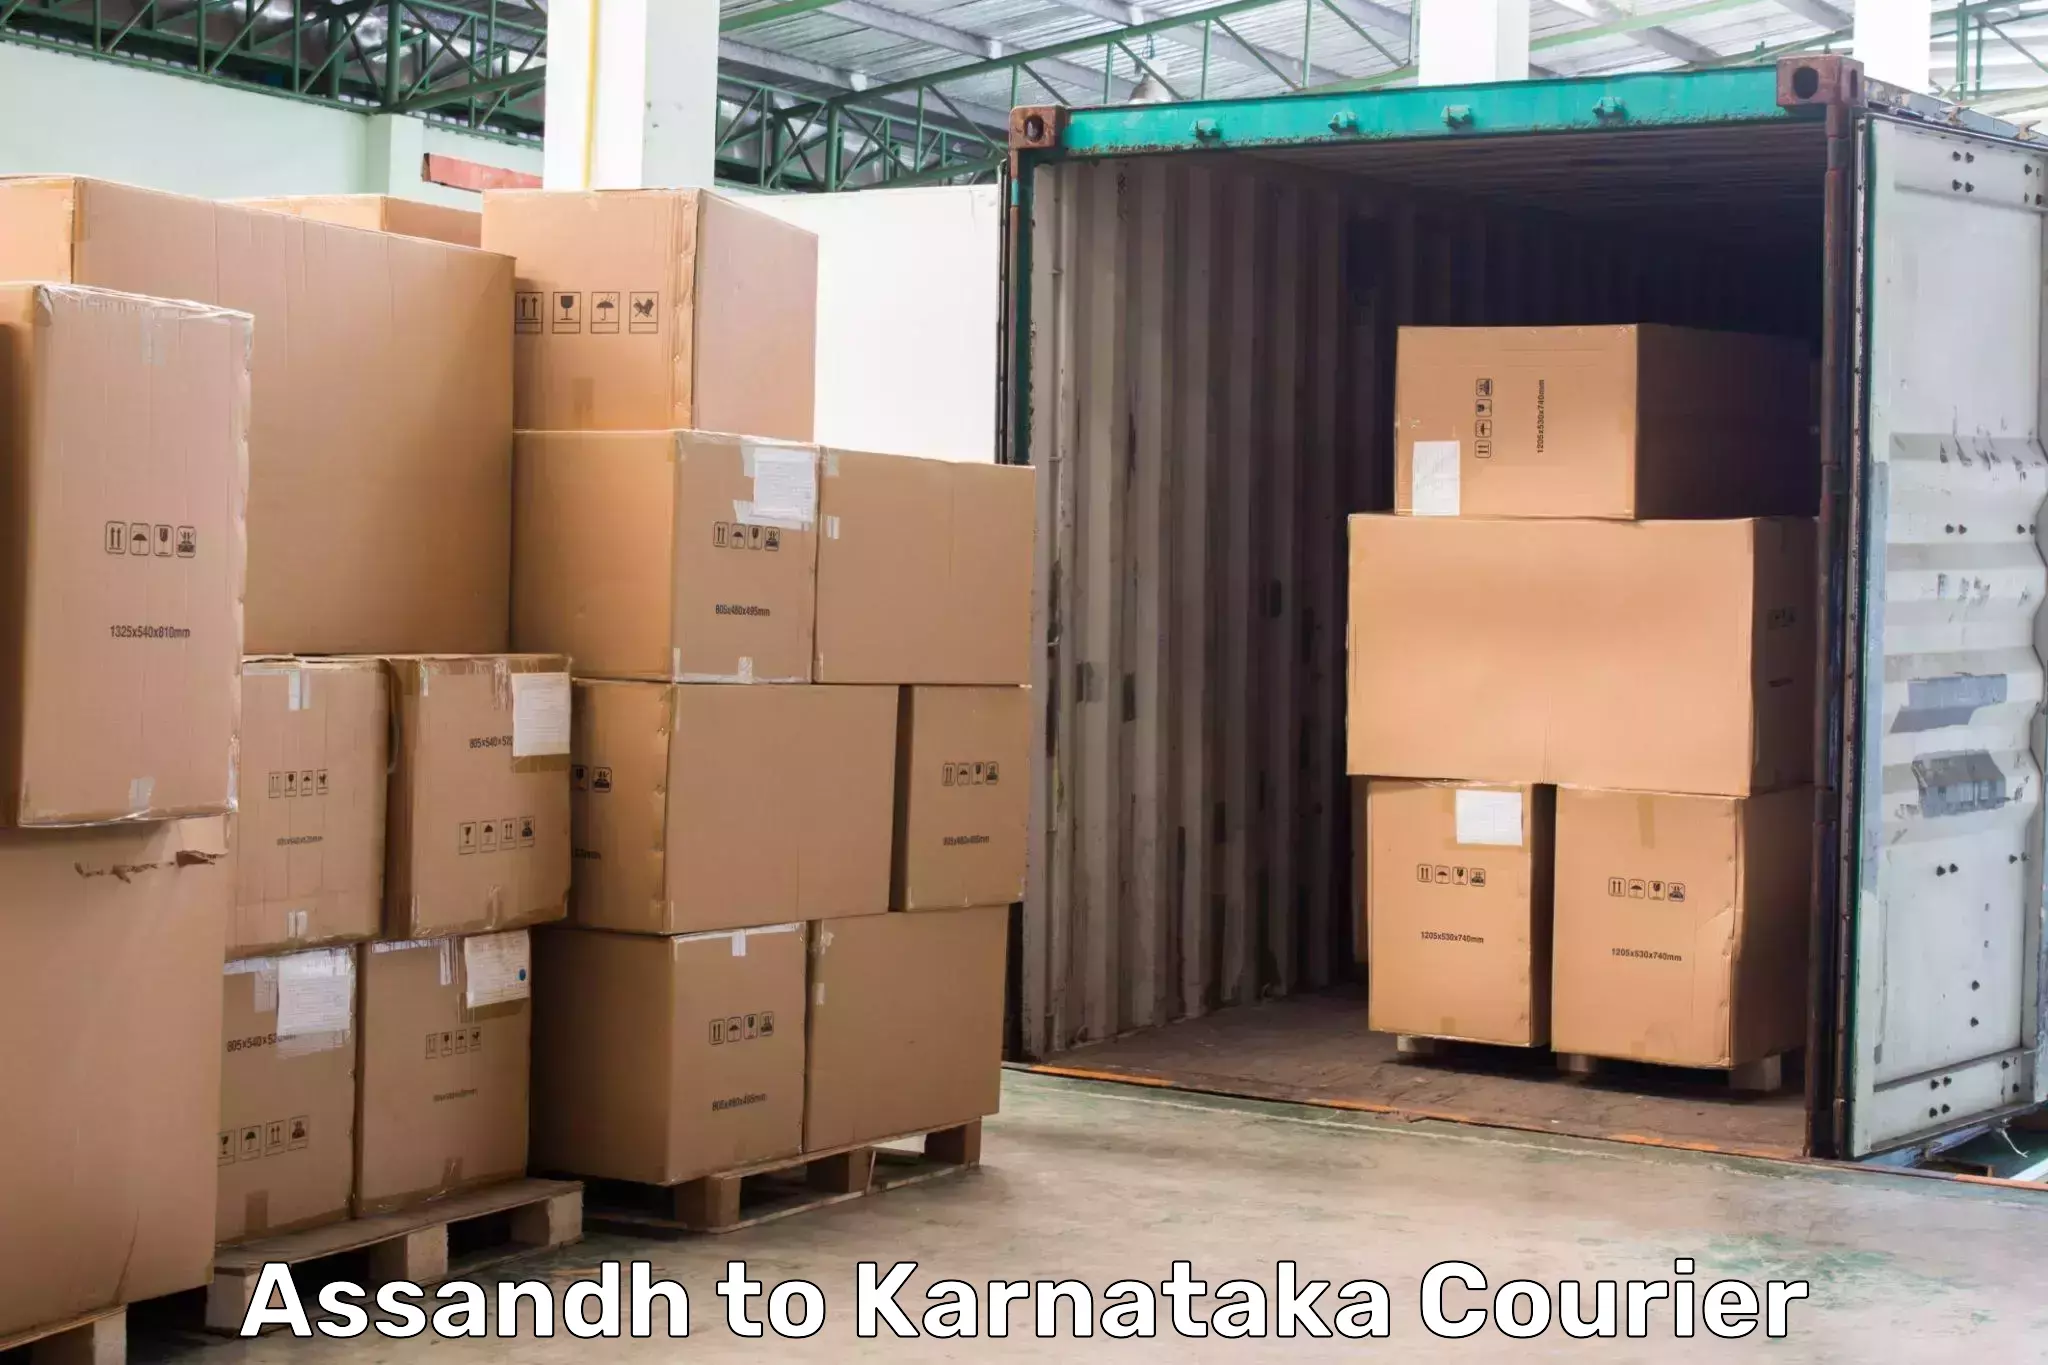 Holiday shipping services Assandh to Karnataka